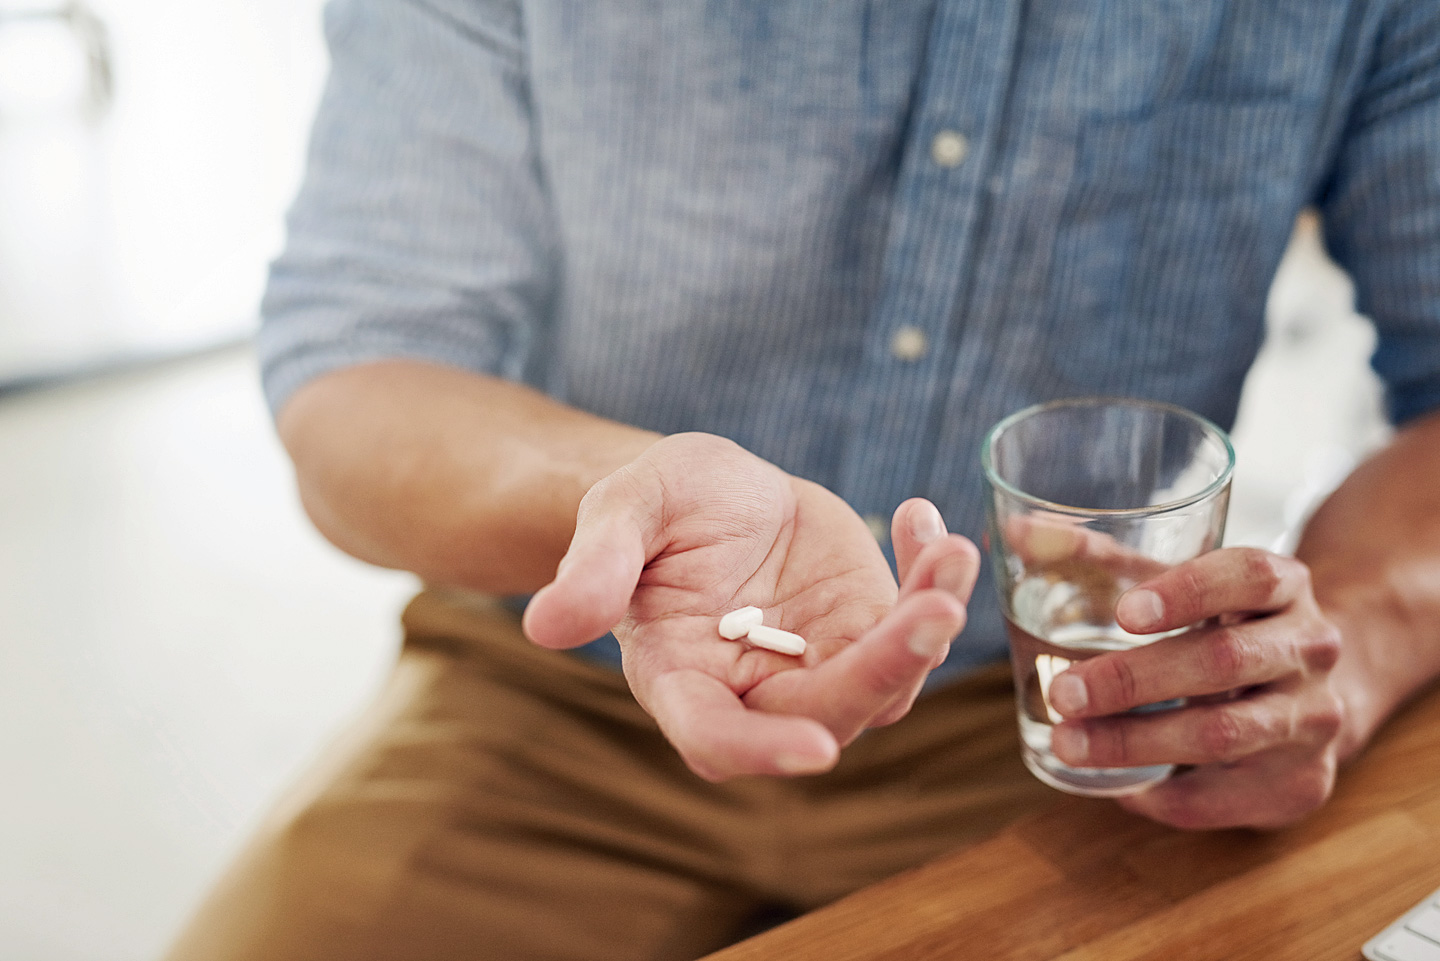 Ein Mann hält zwei Tabletten in der Hand, die er mit einem Glas Wasser zu sich nehmen möchte.